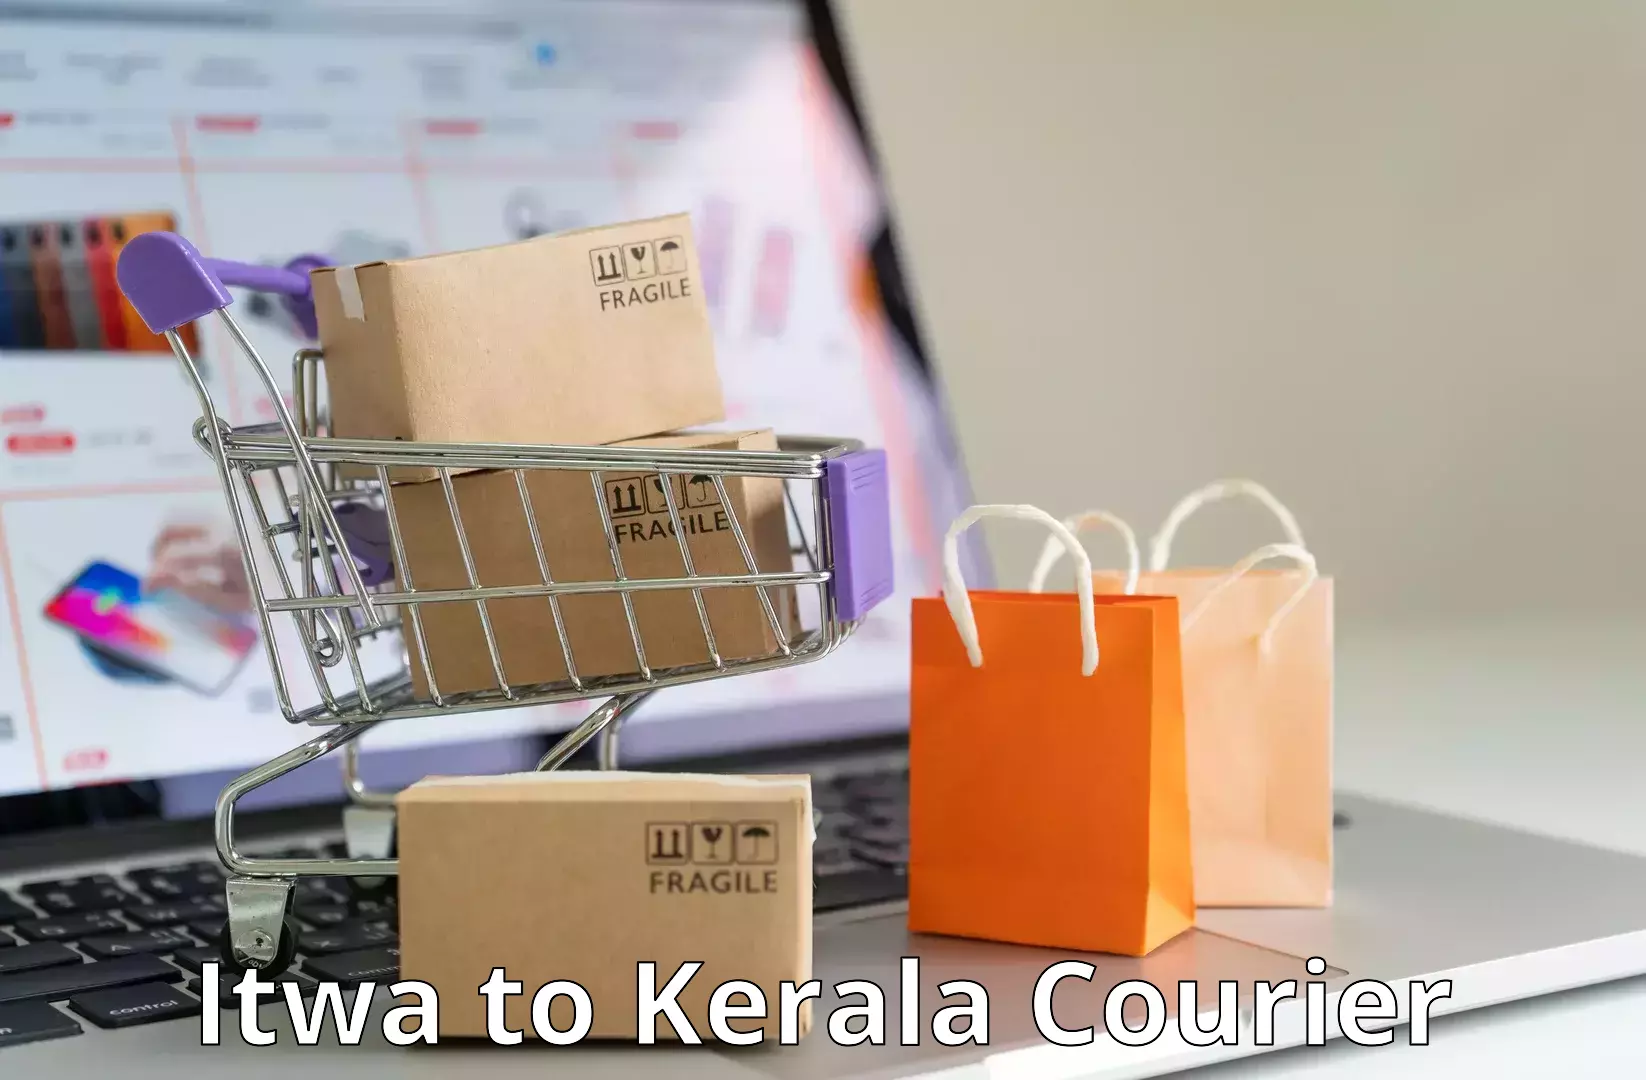 Budget-friendly shipping Itwa to Kiliyanthara